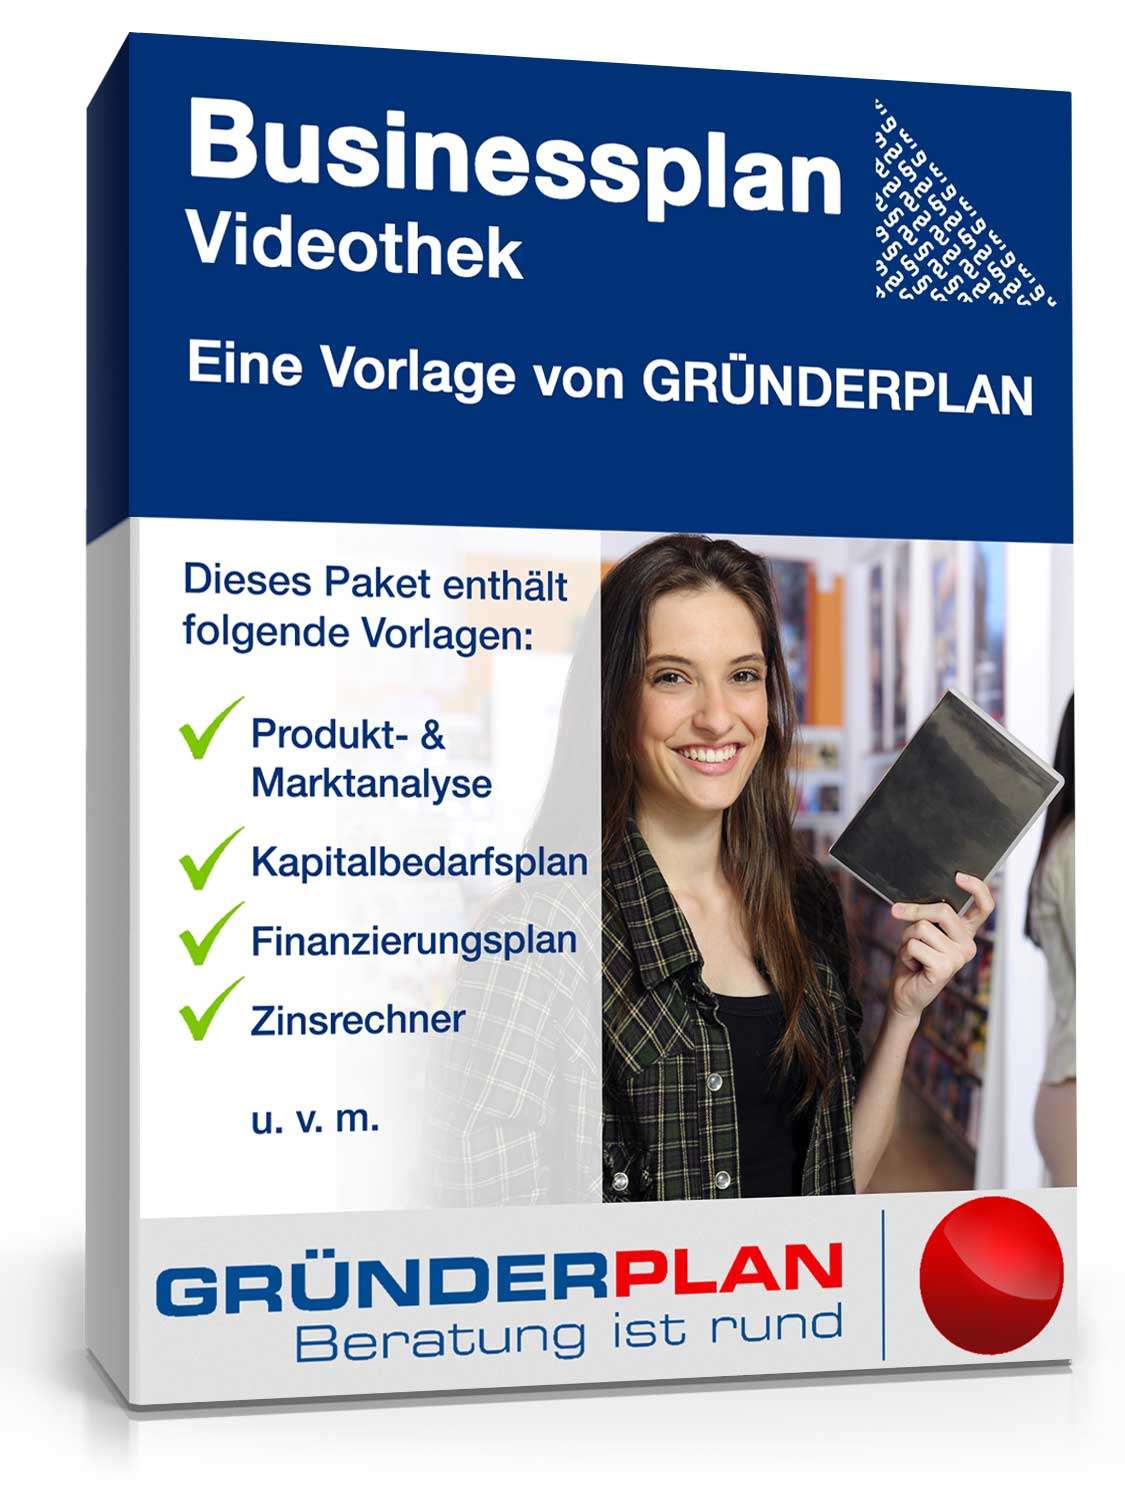 Hauptbild des Produkts: Businessplan Videothek von Gründerplan